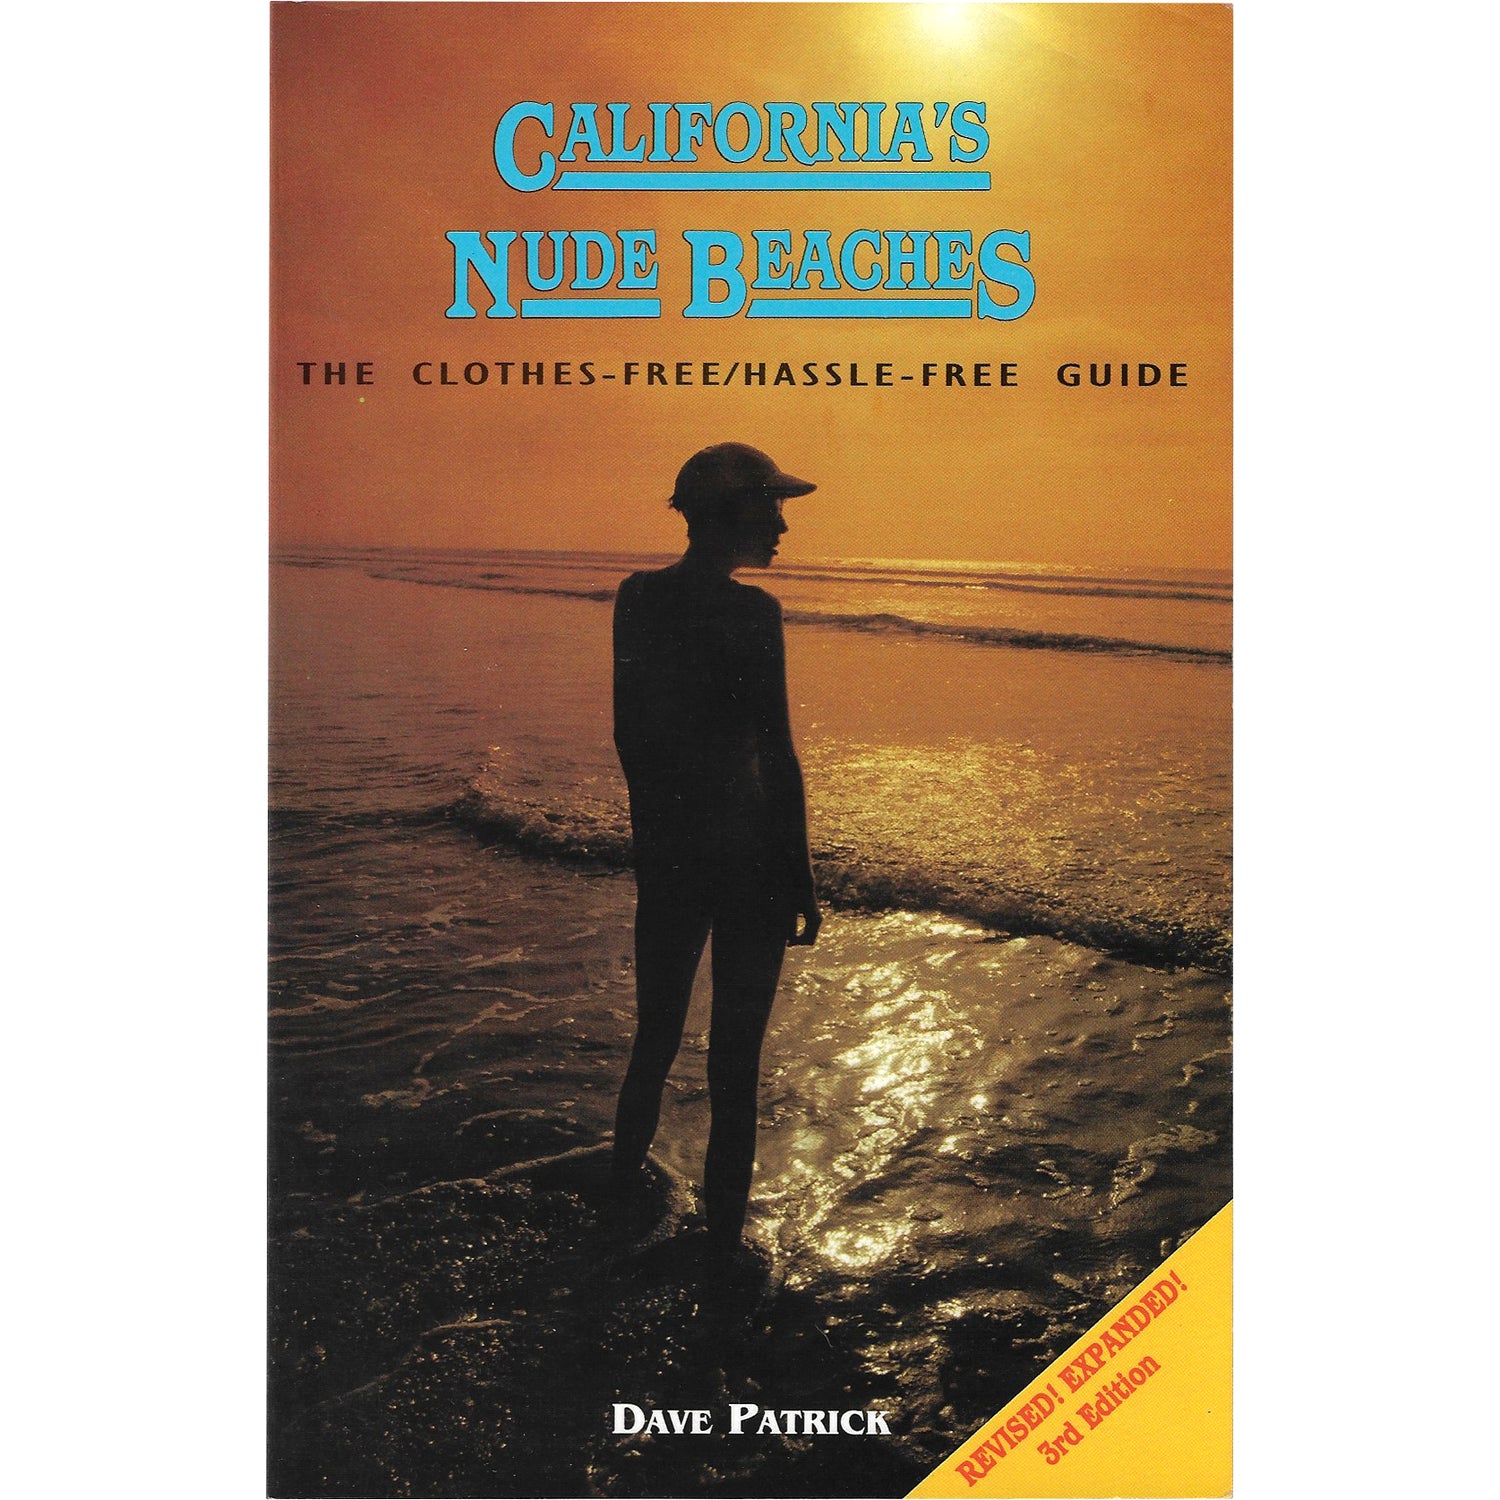 CALIFORNIA'S NUDE BEACHES BOOK